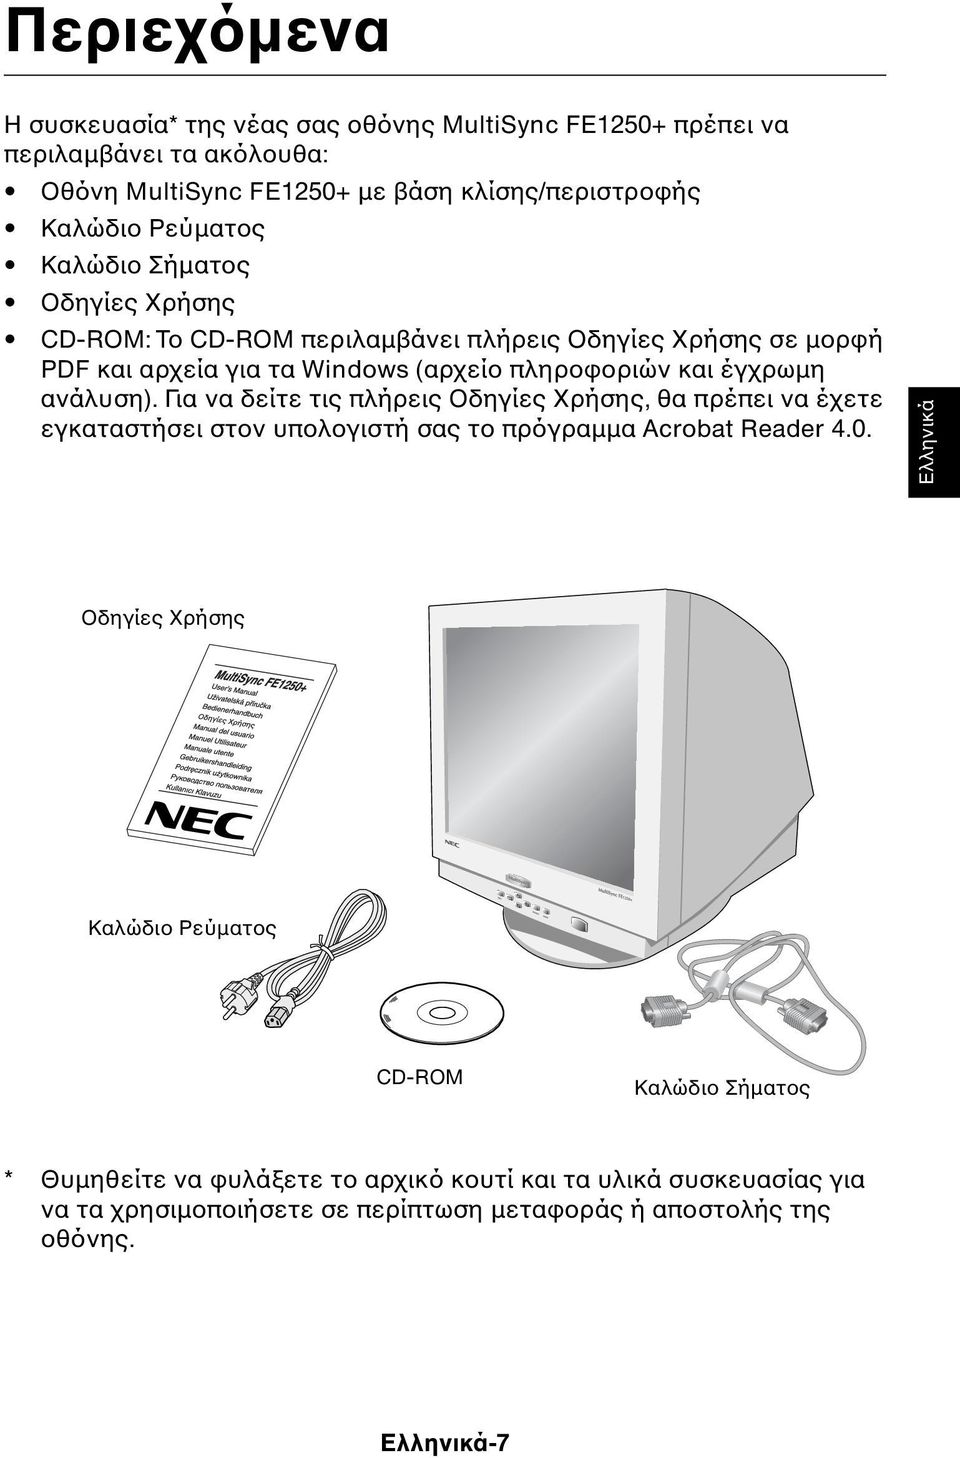 Για να δείτε τις πλήρεις Οδηγίες Χρήσης, θα πρέπει να έχετε εγκαταστήσει στον υπολογιστή σας το πρόγραµµα Acrobat Reader 4.0.